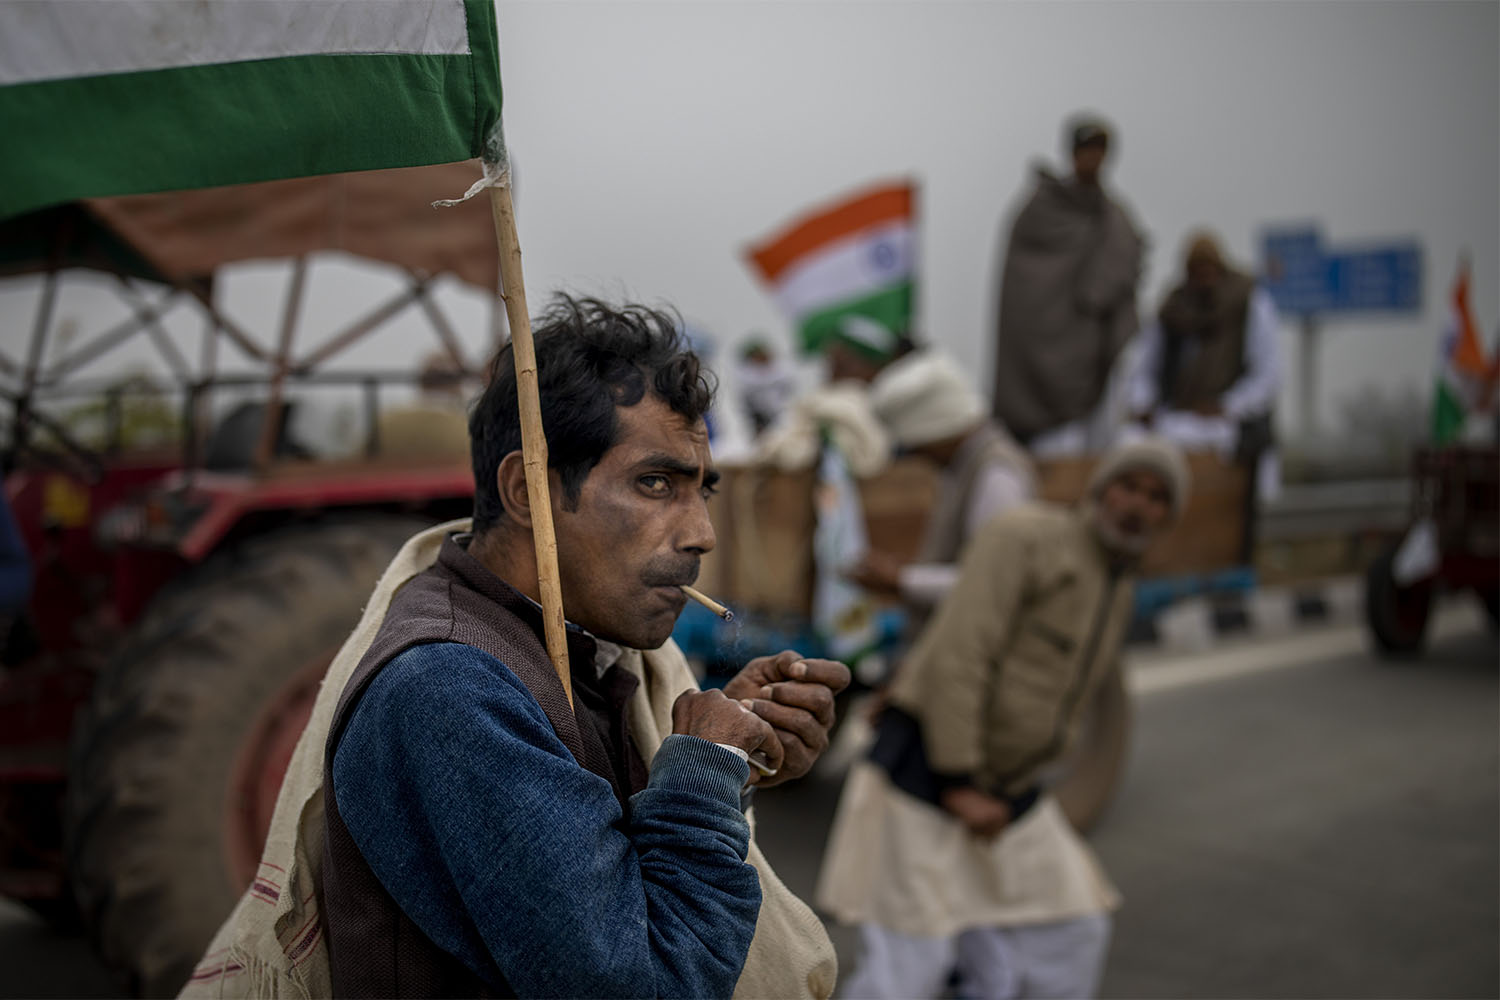 חקלאי בעצרת טרקטורים בניו דלהי, הודו. החקלאים יצאו למאבק ארוך נגד חוקי החווה החדשים שהובילה הממשלה, ולבסוף ניצחו והביאו לביטולם. 7 בינואר 2021 (צילום: AP Photo/Altaf Qadri)